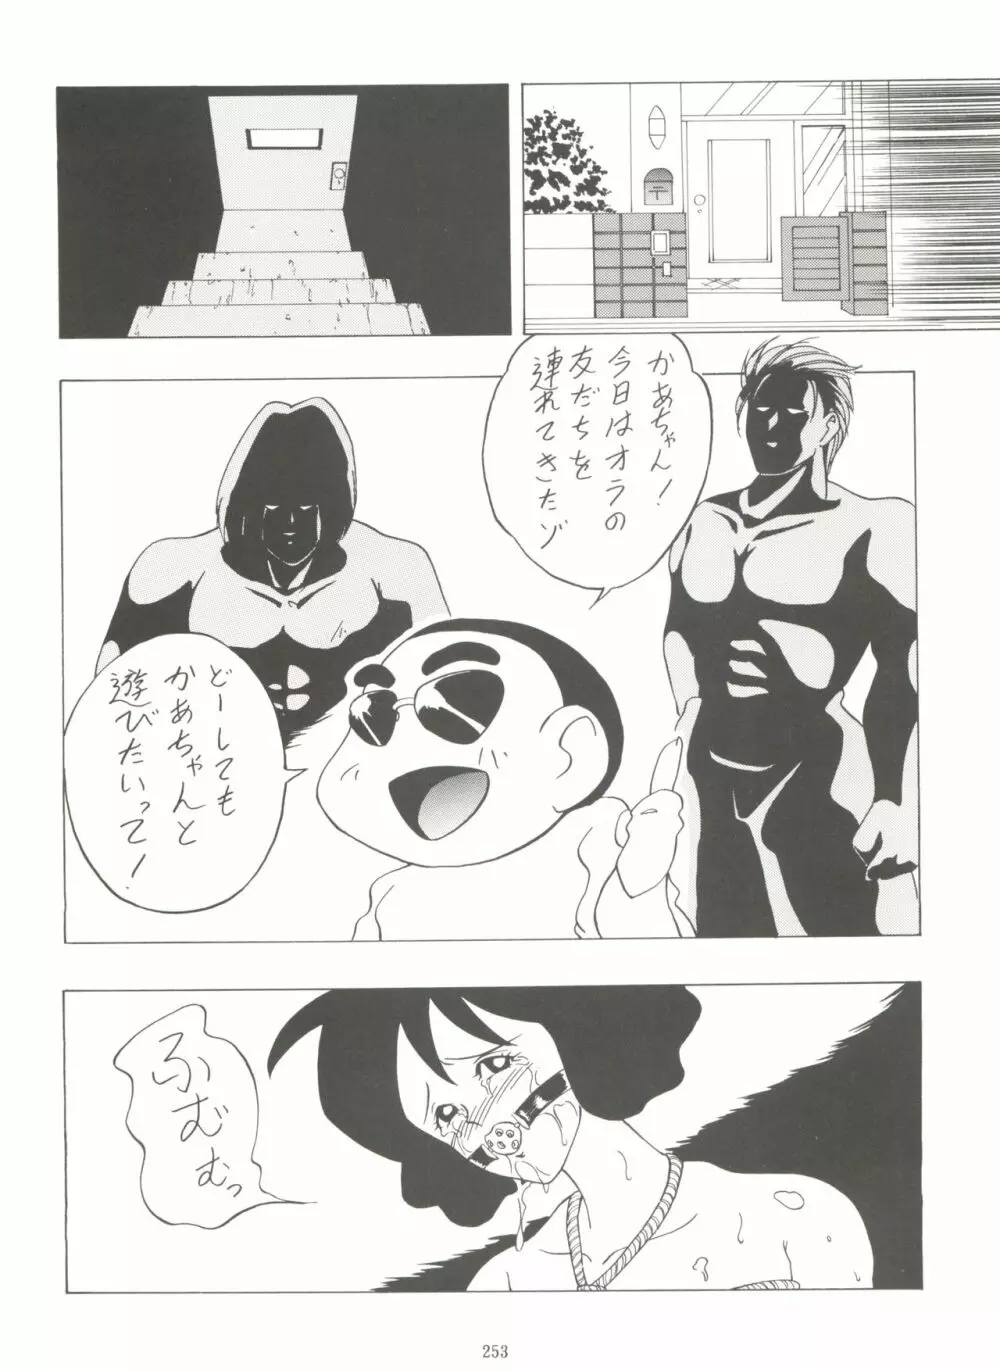 影の NanDemo-R - page253